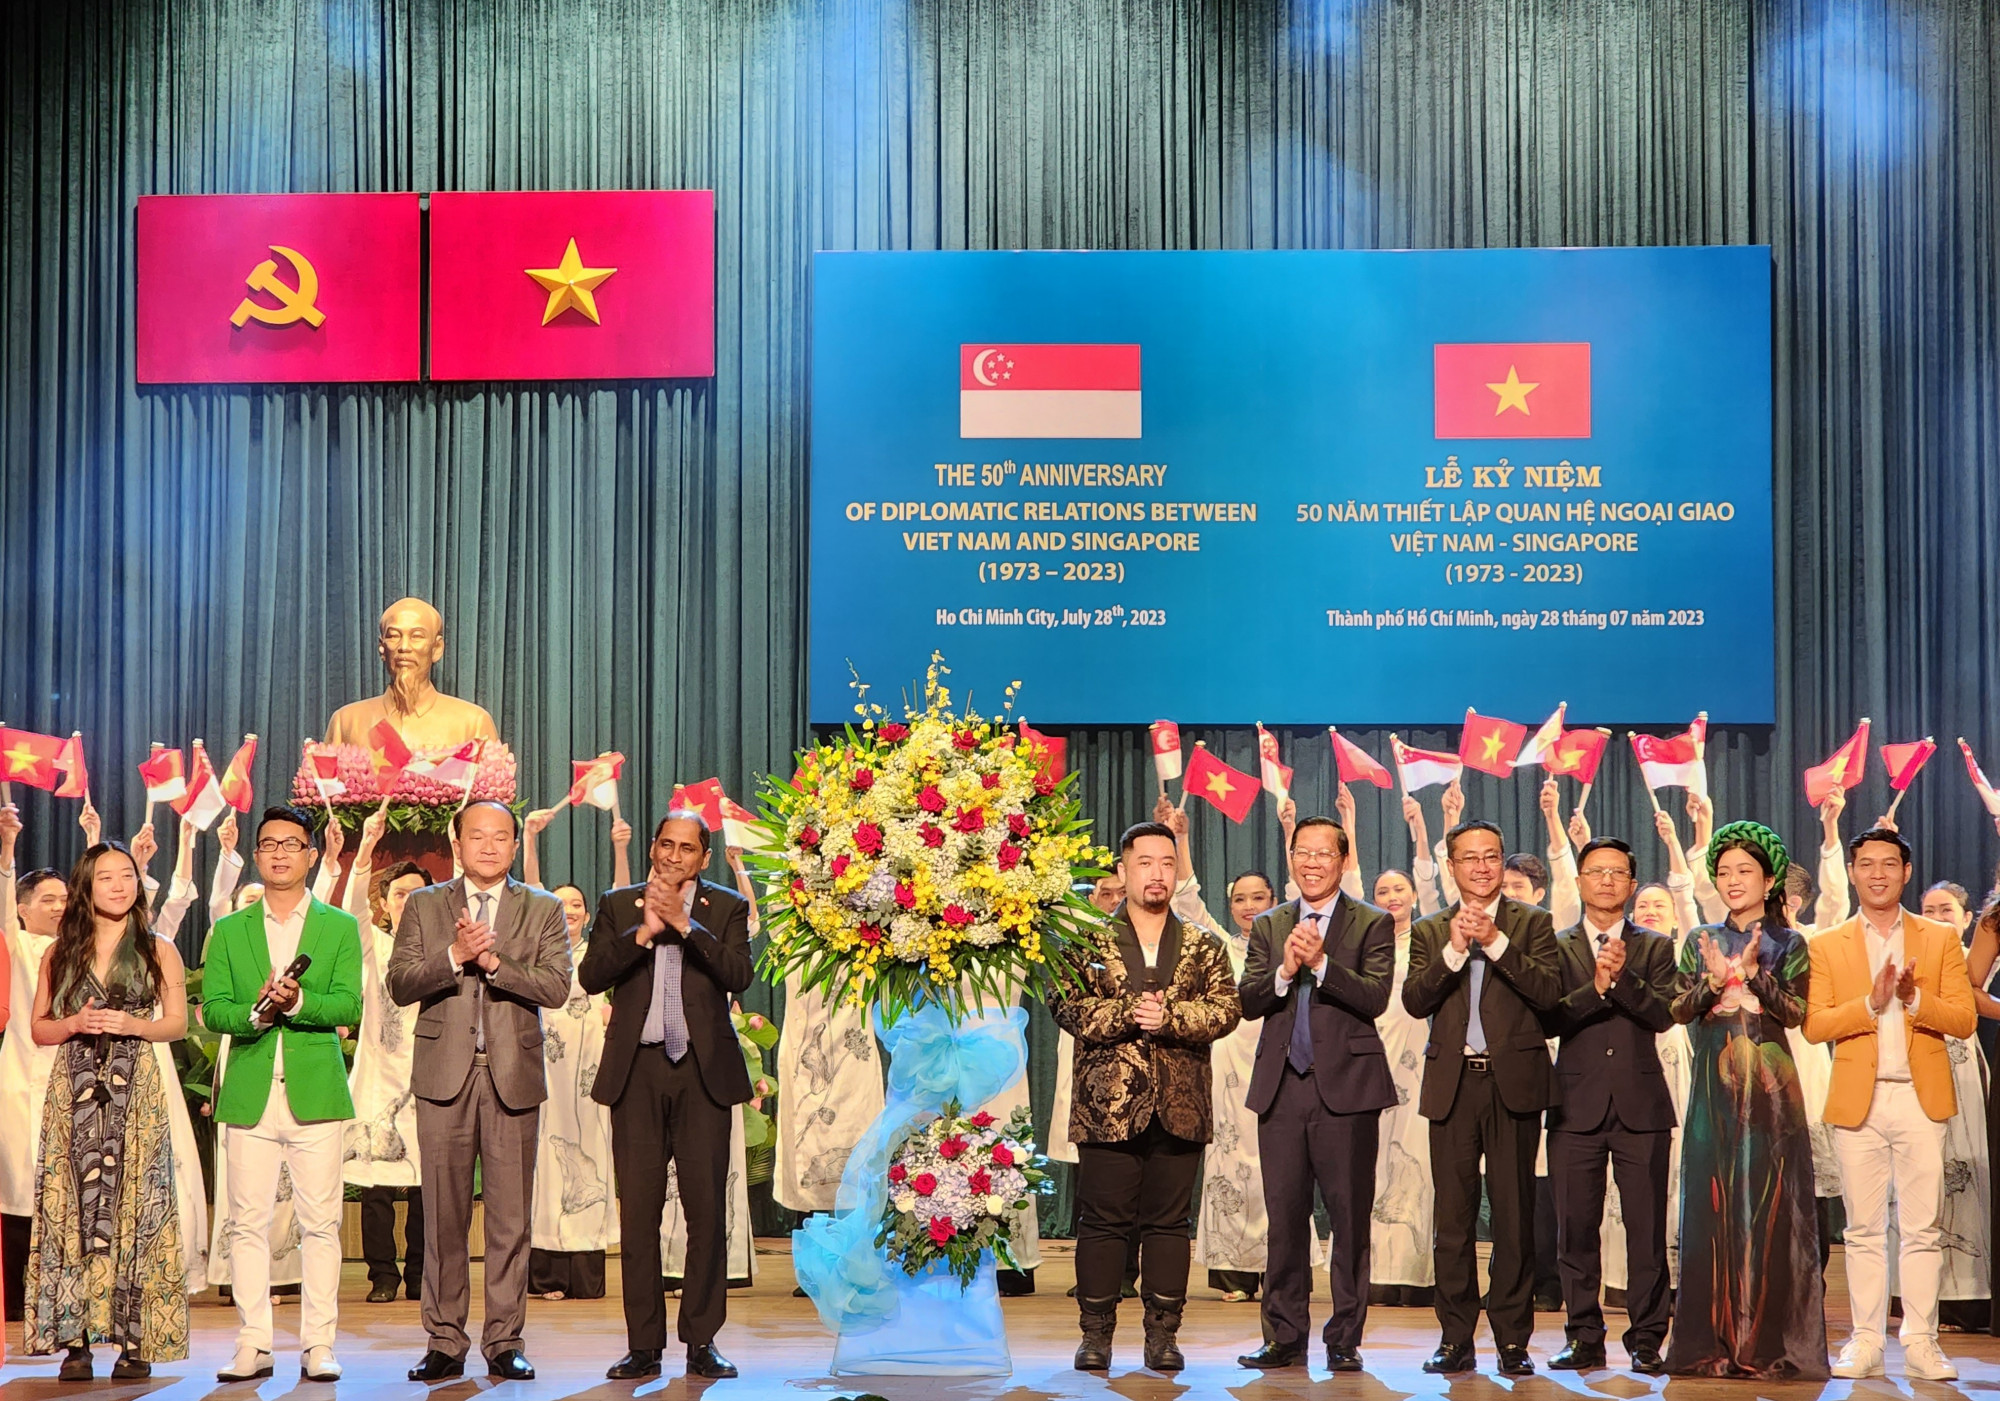 Chủ tịch UBND TPHCM Phan Văn Mãi, Đại sứ Singapore tại Việt Nam Jaya Ratman, Tổng Lãnh sự Singapore tại TPHCM Roy Kho trao lẵng hoa cho các nghệ sĩ Singapore và Việt Nam tham gia chương trình lễ kỷ niệm